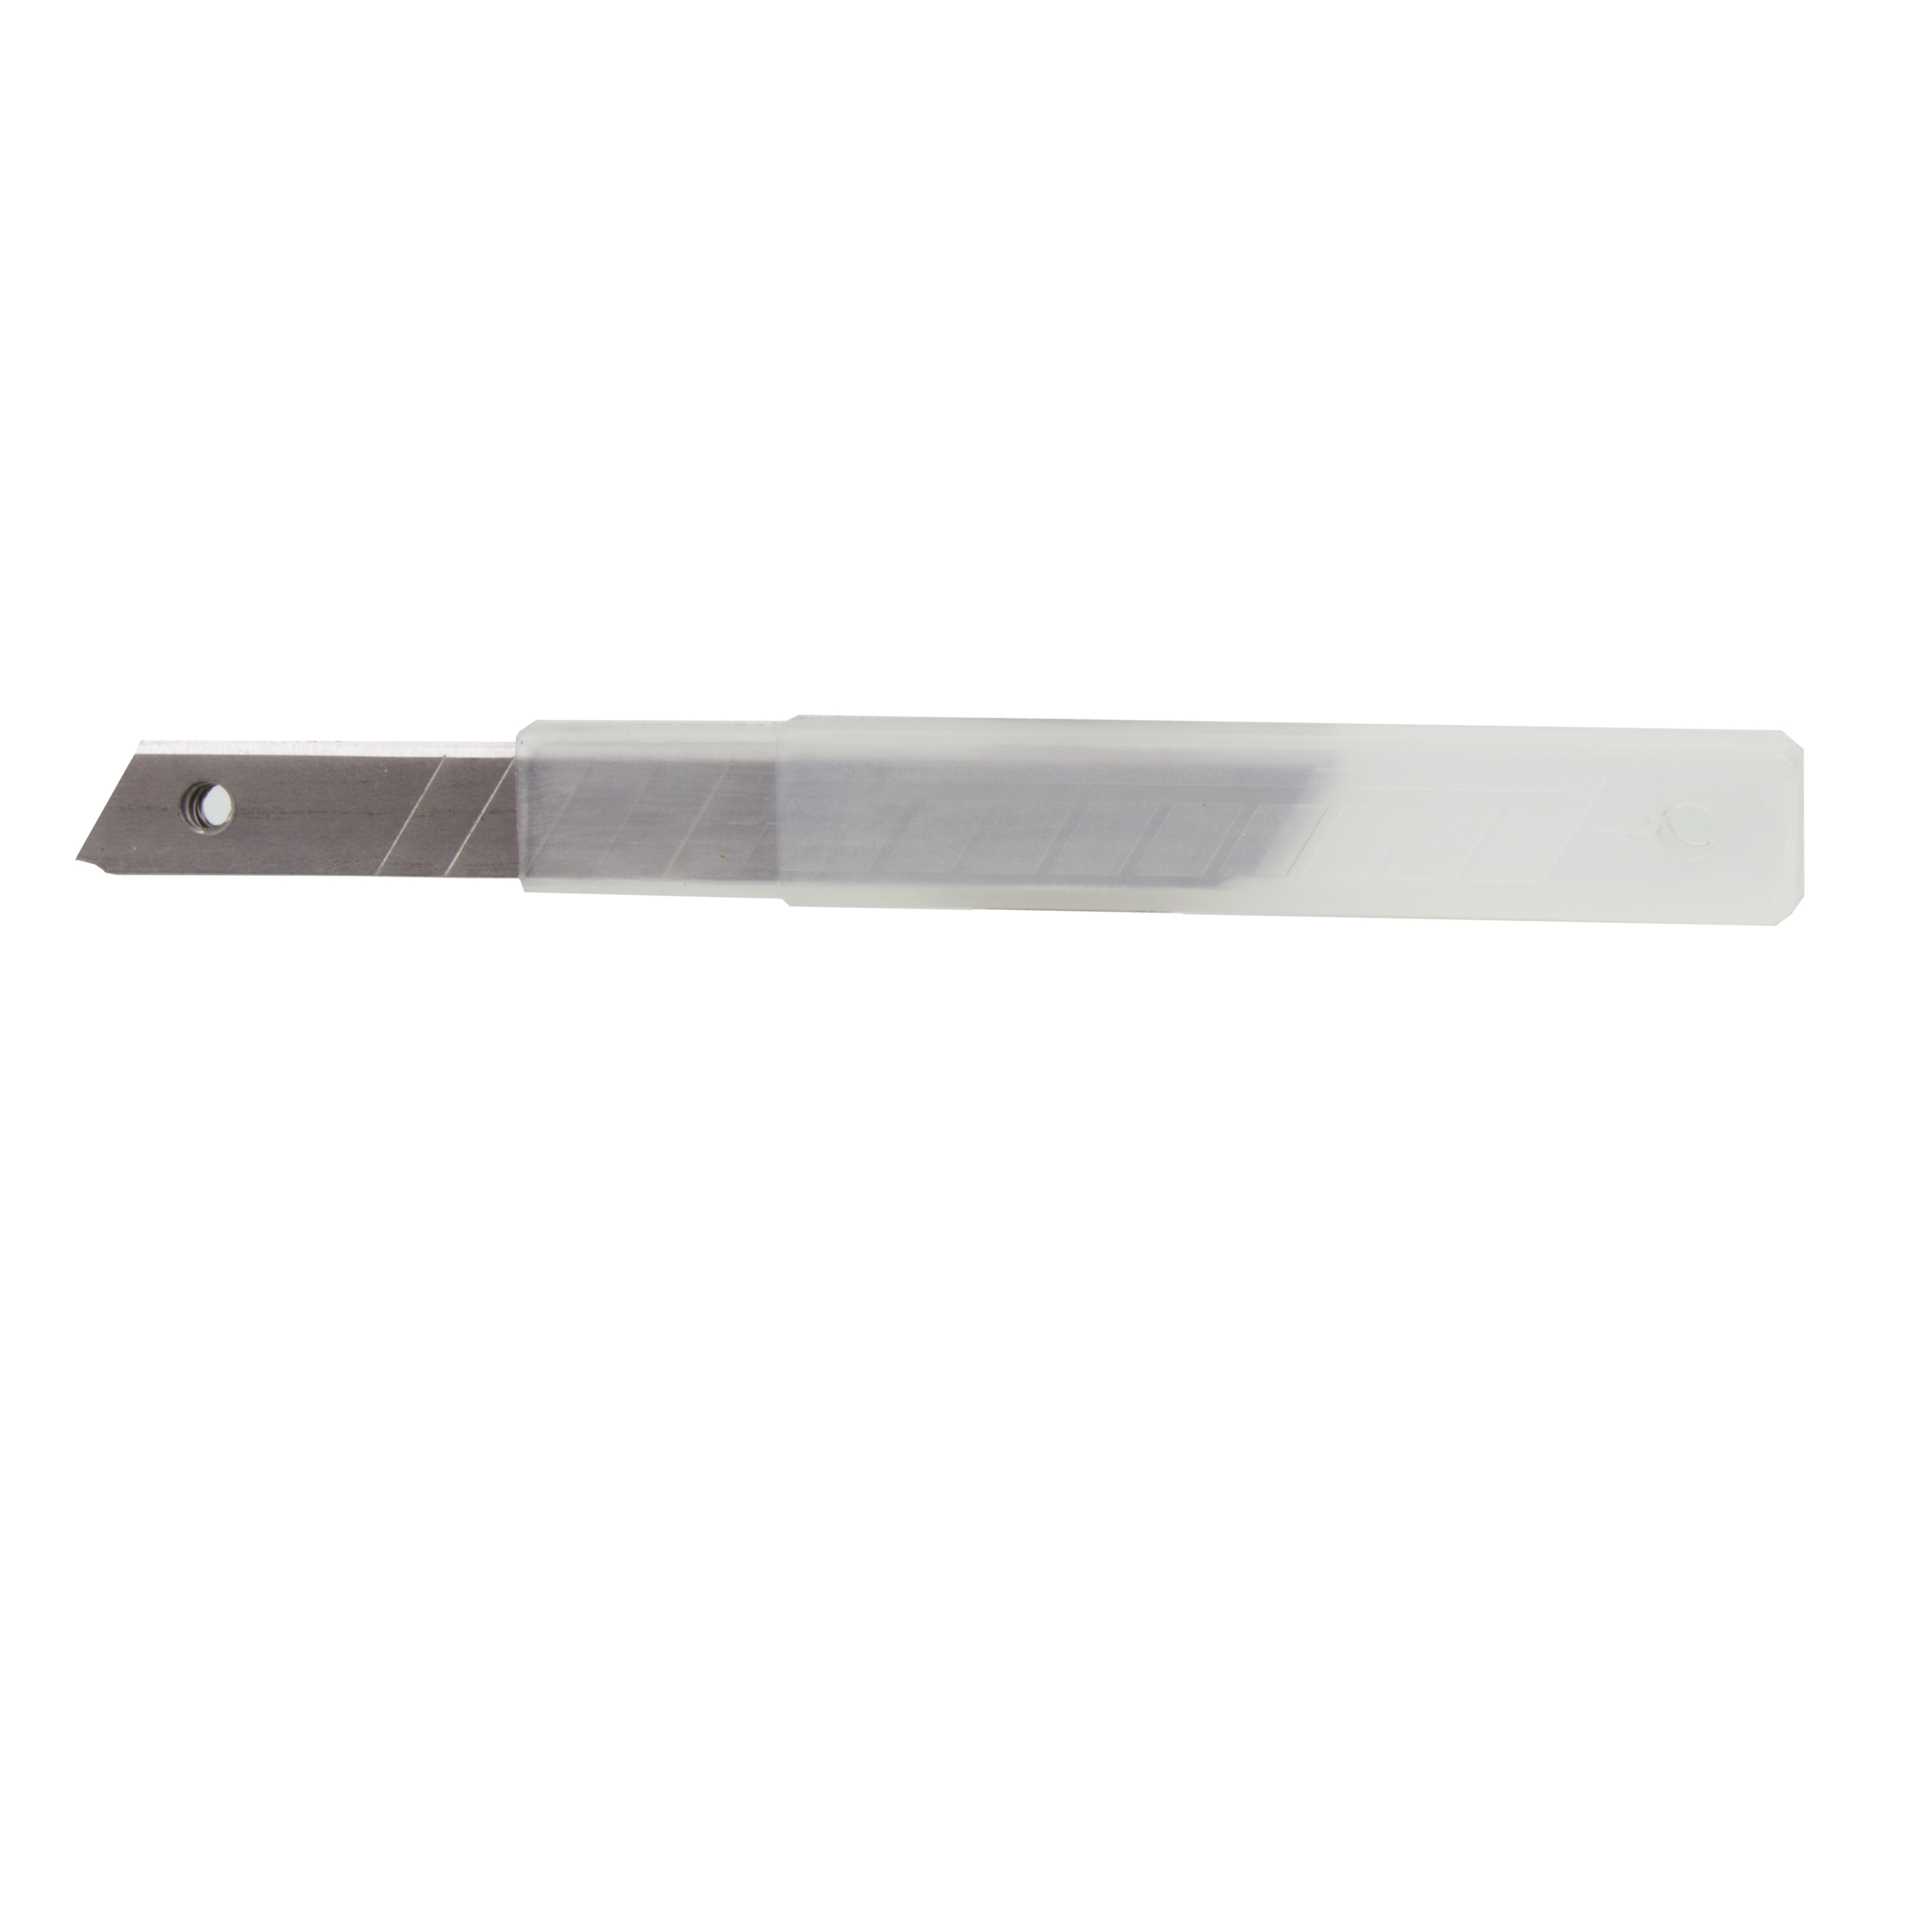 Ersatzklingen für Cuttermesser mit 9-mm-Klinge